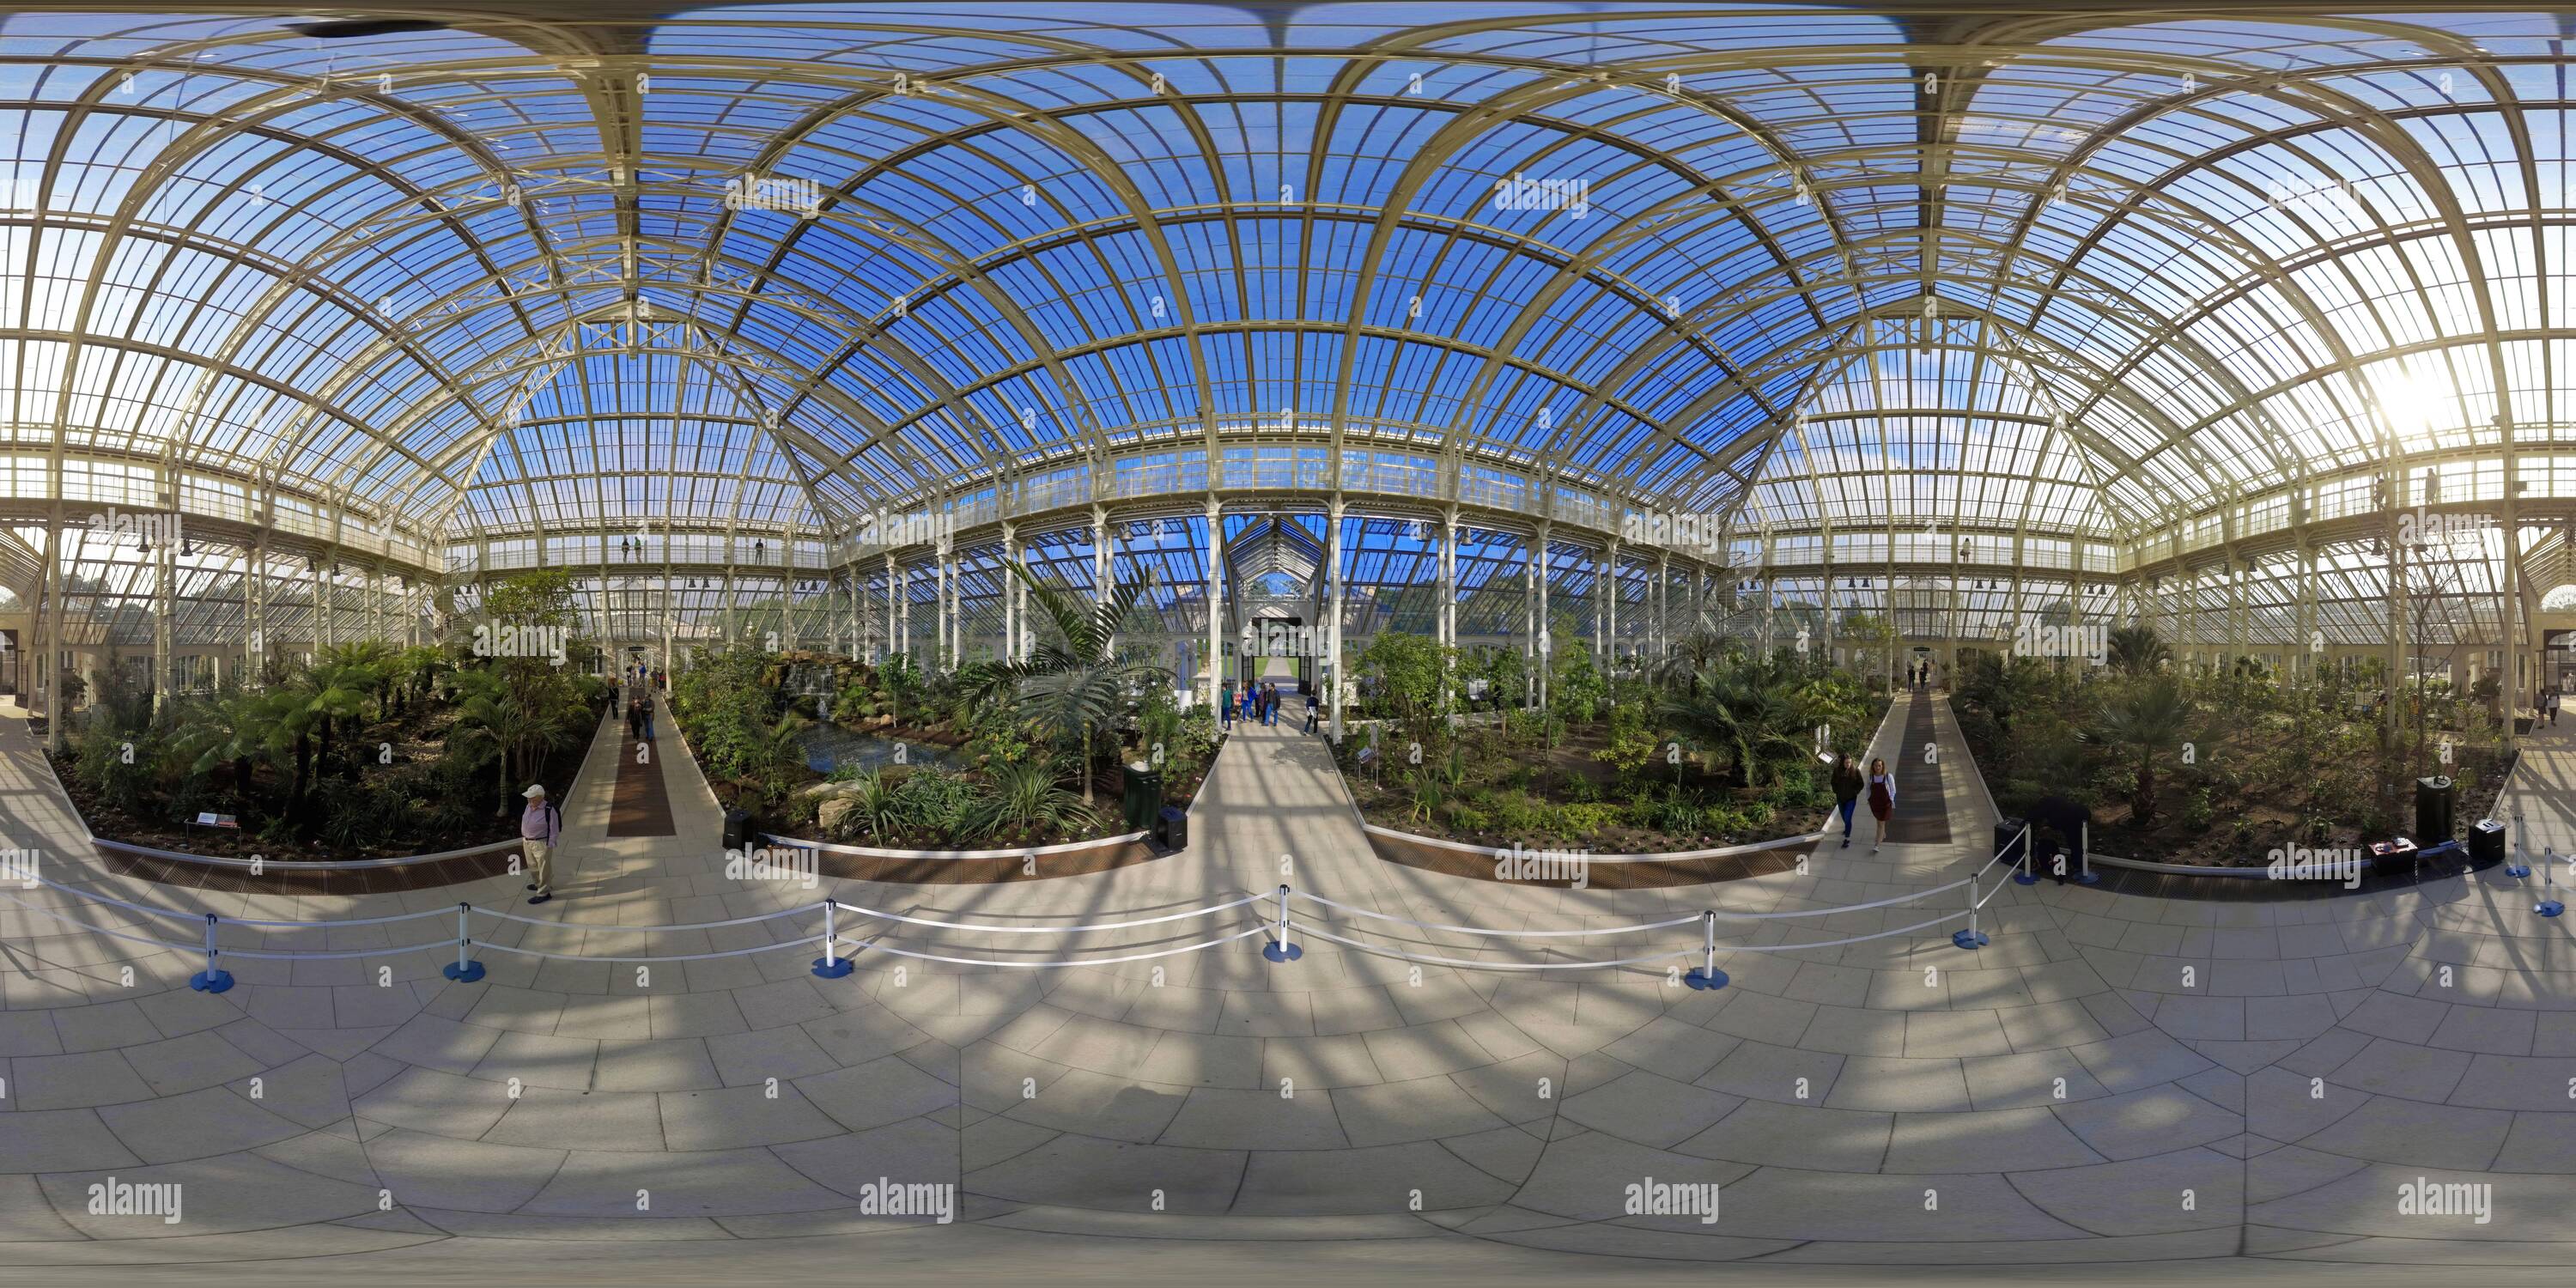 Visualizzazione panoramica a 360 gradi di Dai un'occhiata alla più grande vetreria vittoriana del mondo, la Tempate House at Kew Gardens. Credito immagine : © Mark Pain / Alamy